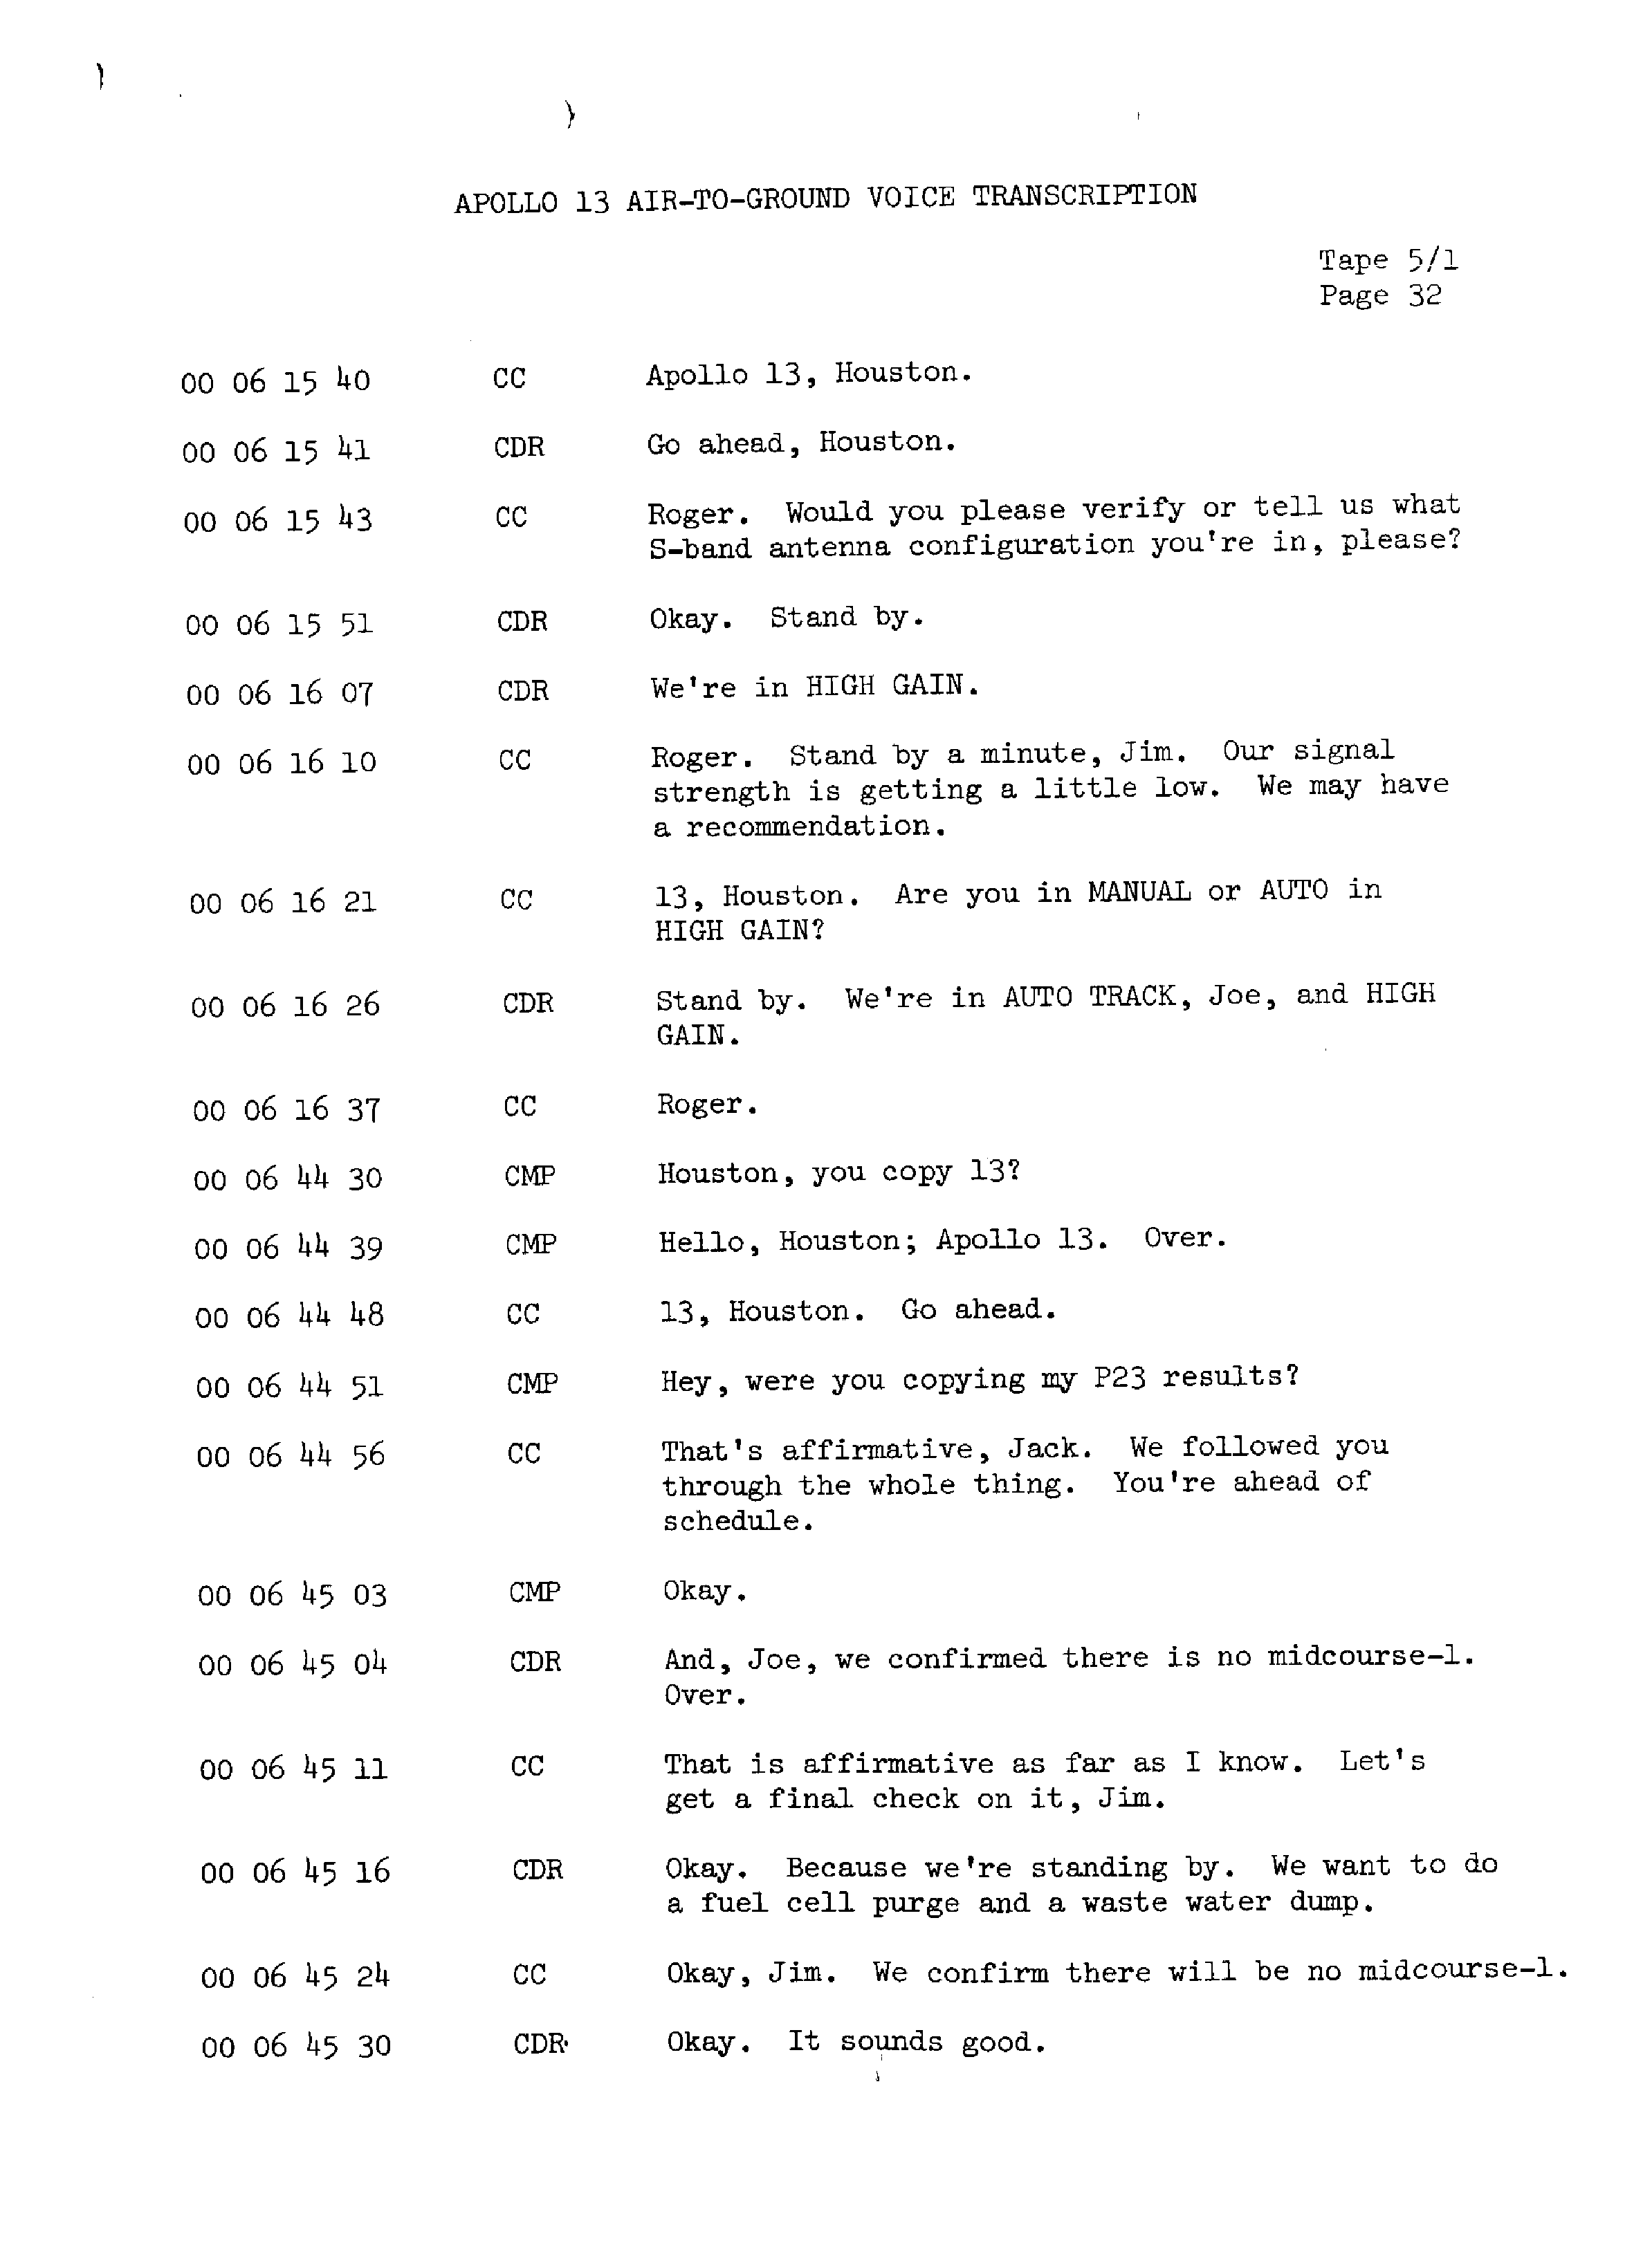 Page 39 of Apollo 13’s original transcript